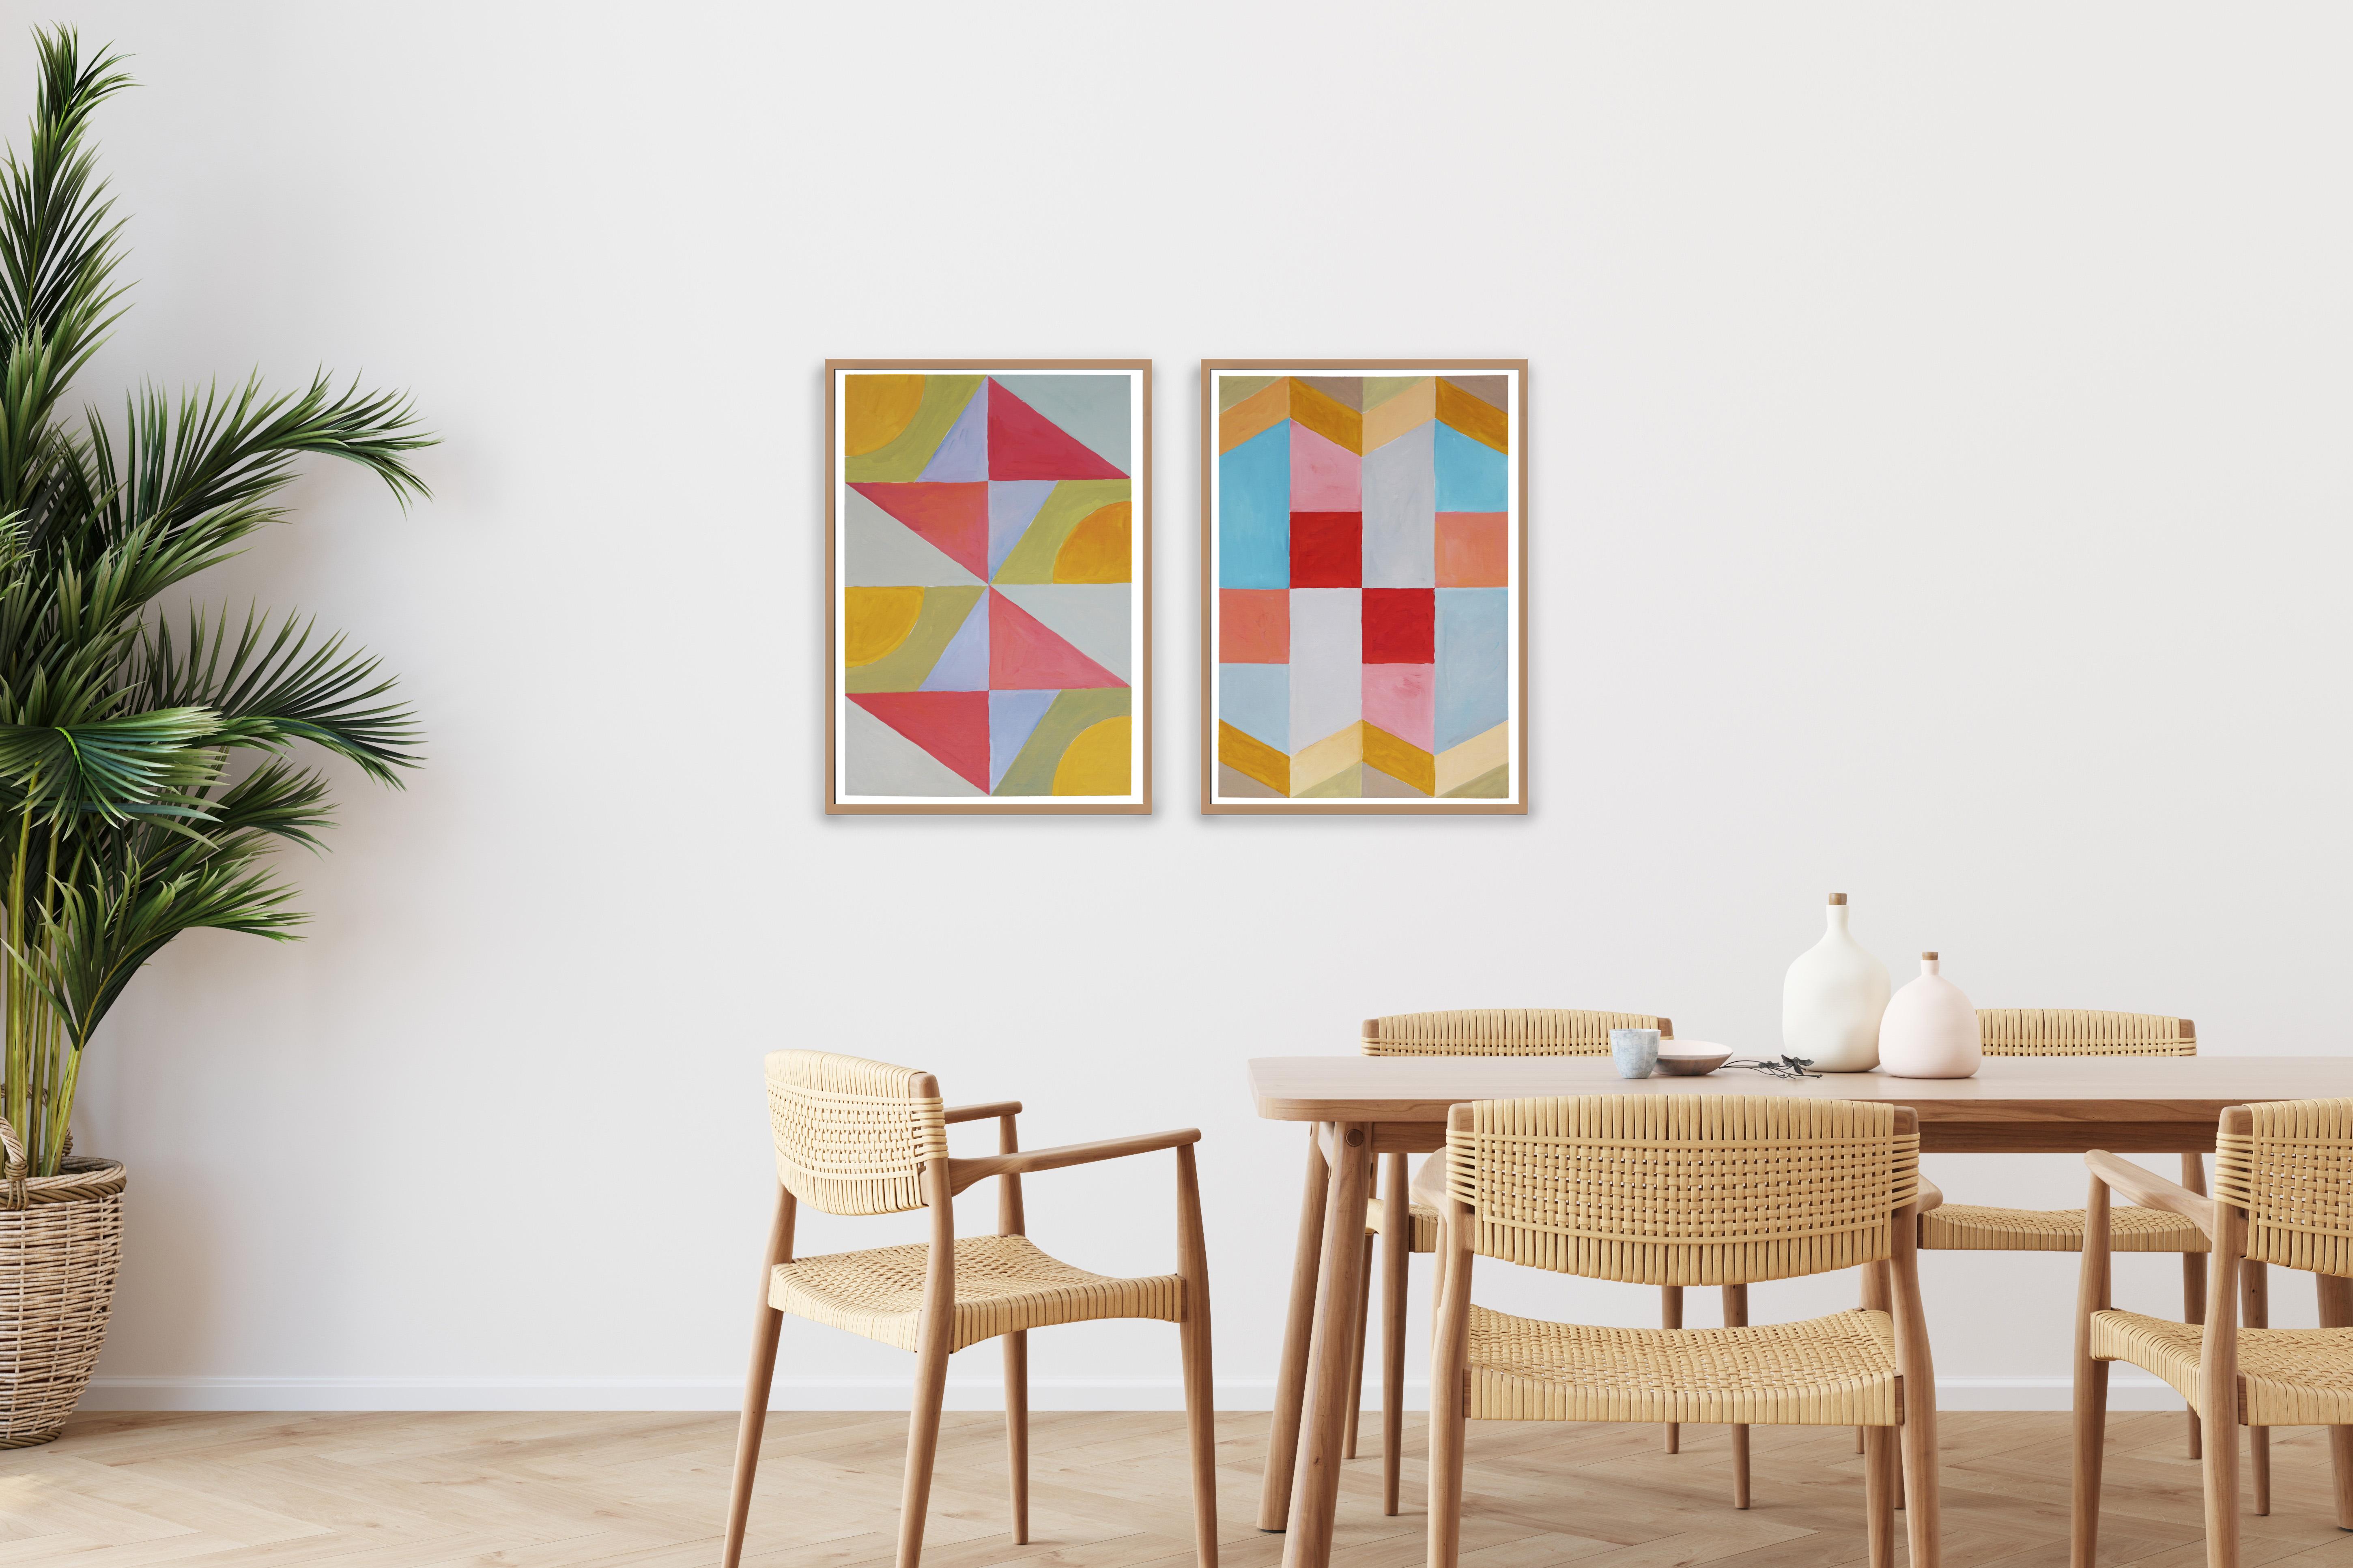 Ces séries de peintures de Natalia Roman s'inspirent des formes géométriques et minimalistes et des peintures du début du modernisme, avec un accent particulier sur les formes Art déco des années 30, 40 et 50. Les combinaisons de couleurs subtiles